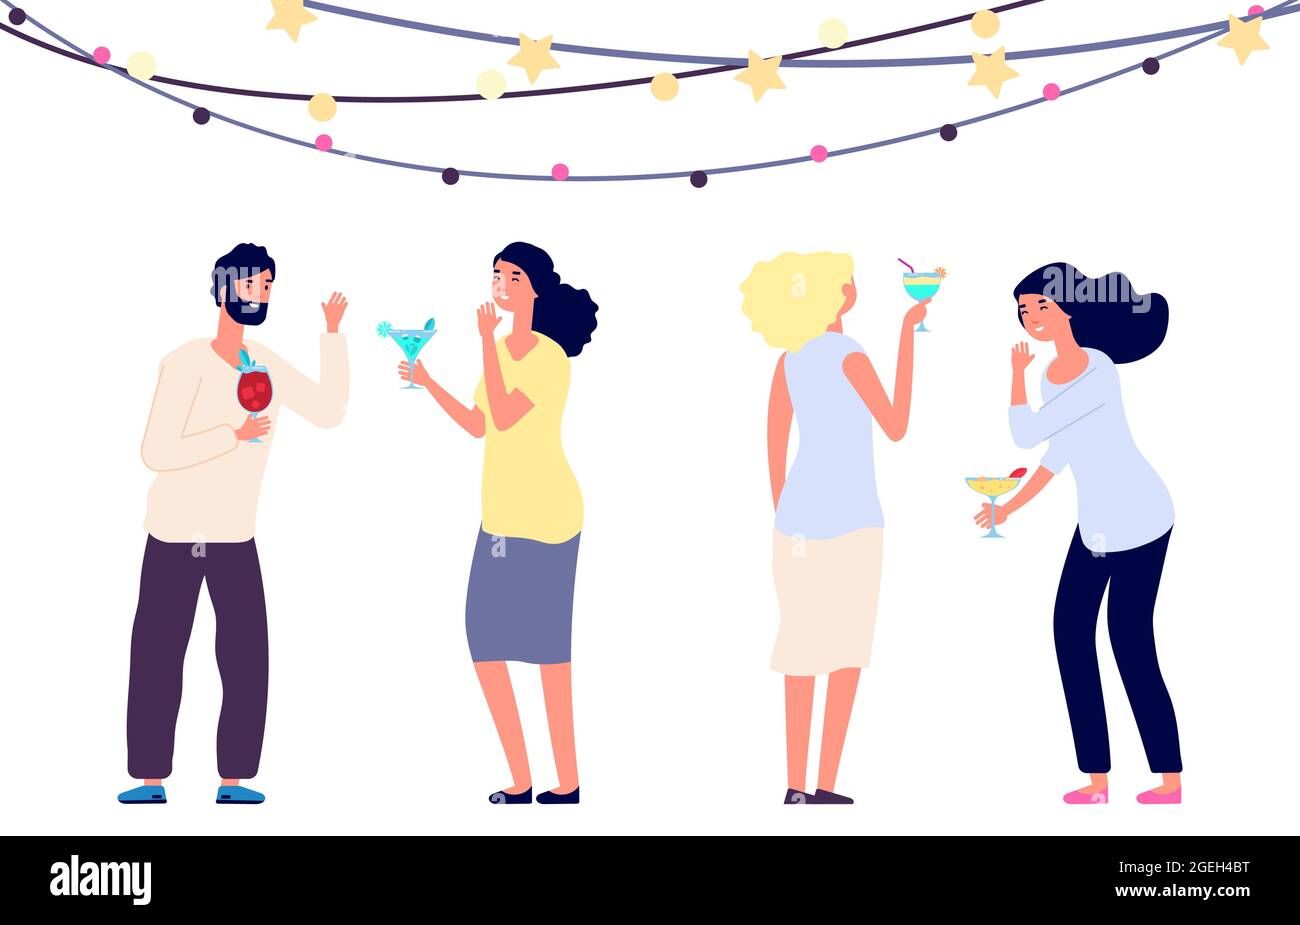 Glücklich trinkende Menschen. Cocktailparty, Frauen und Mann lachen isoliert auf weißem Hintergrund. Menschen feiern Urlaub Vektor-Illustration Stock Vektor